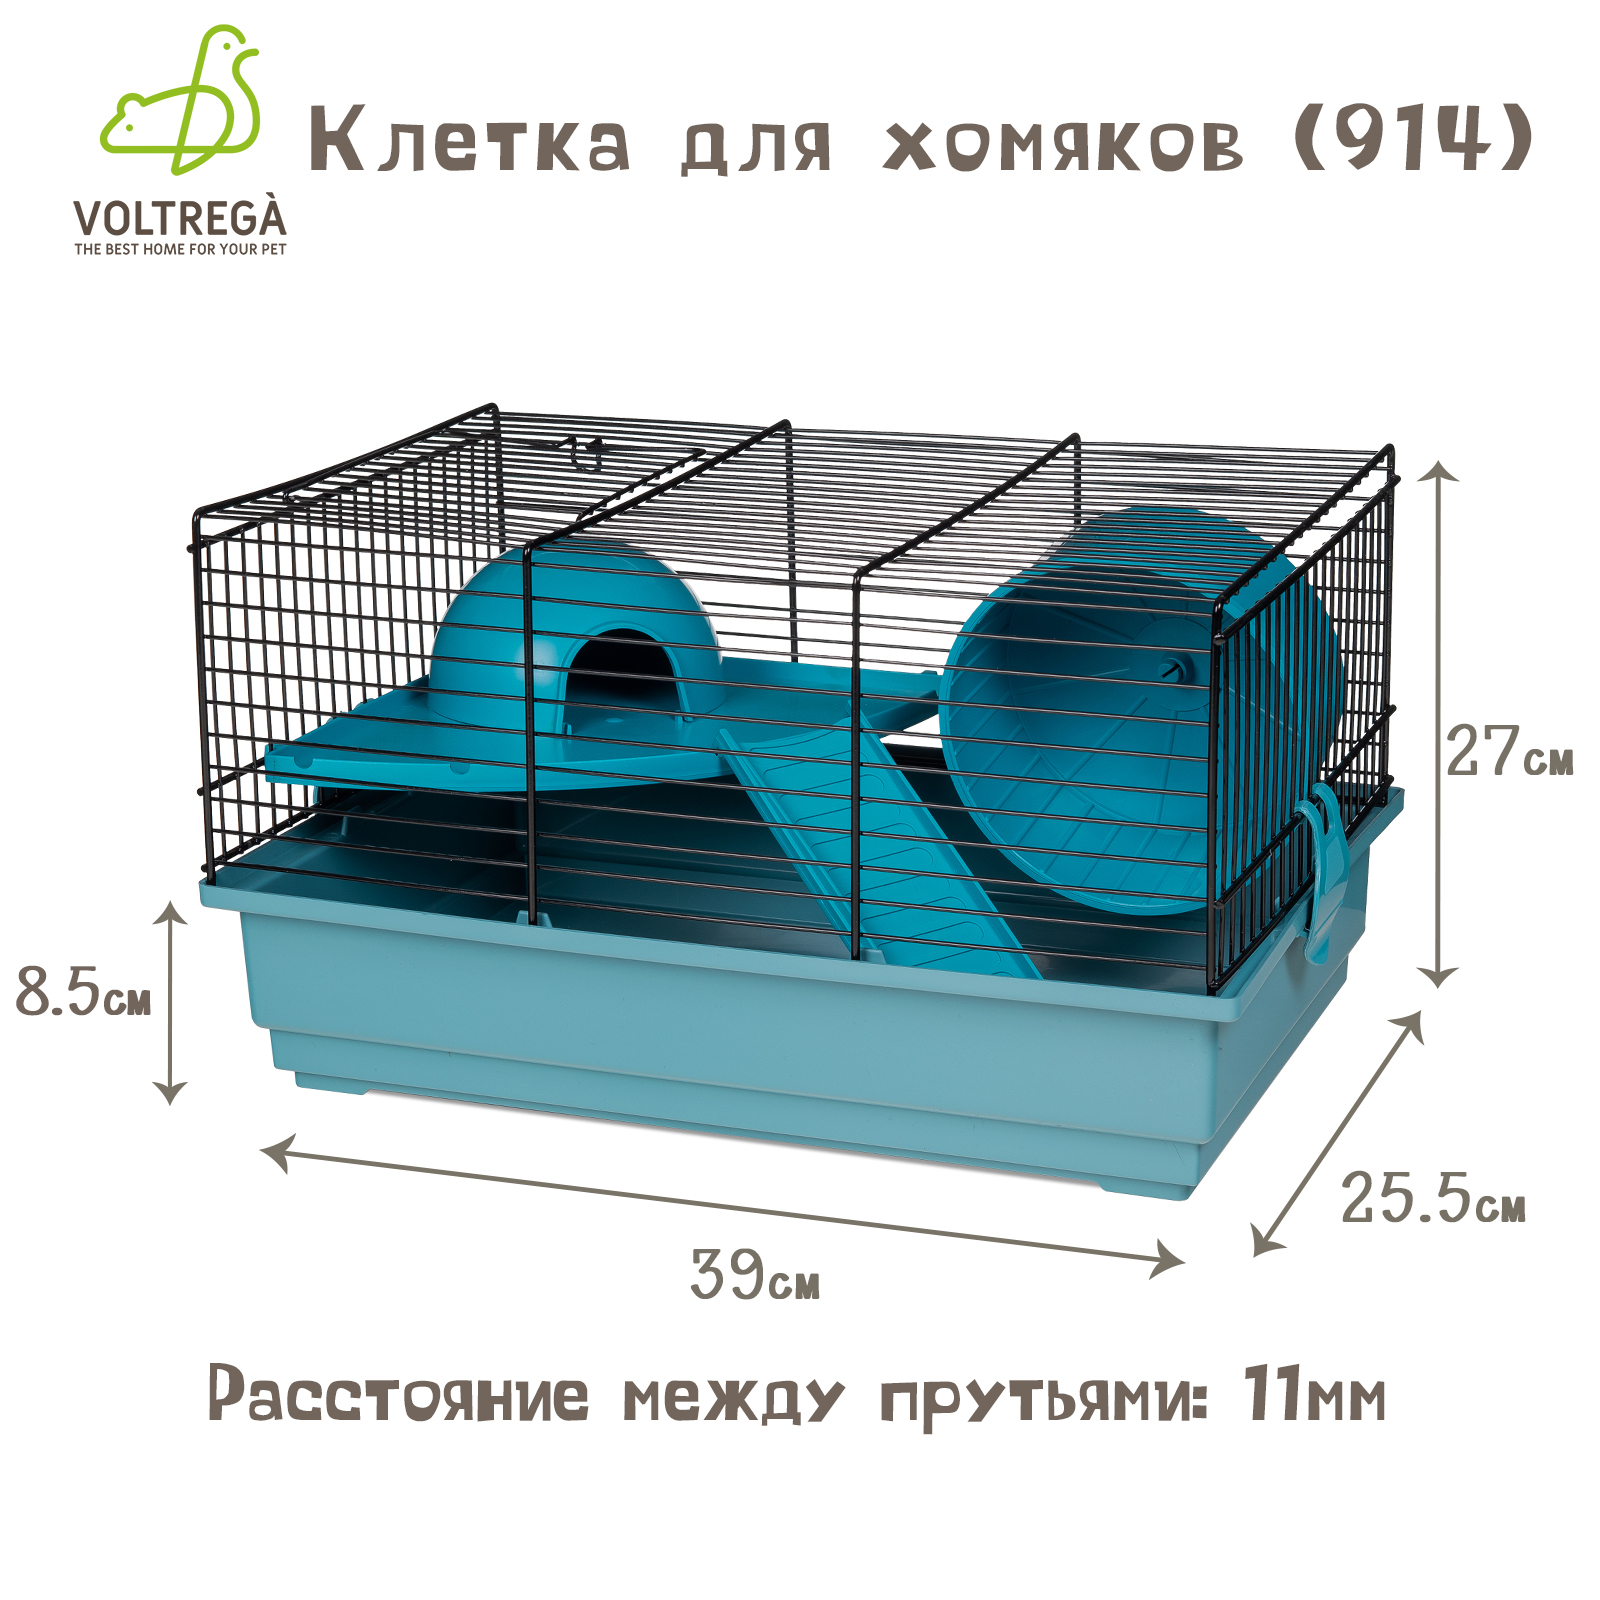 Клетка для грызунов Voltrega 914, синий, 39х25.5х22см